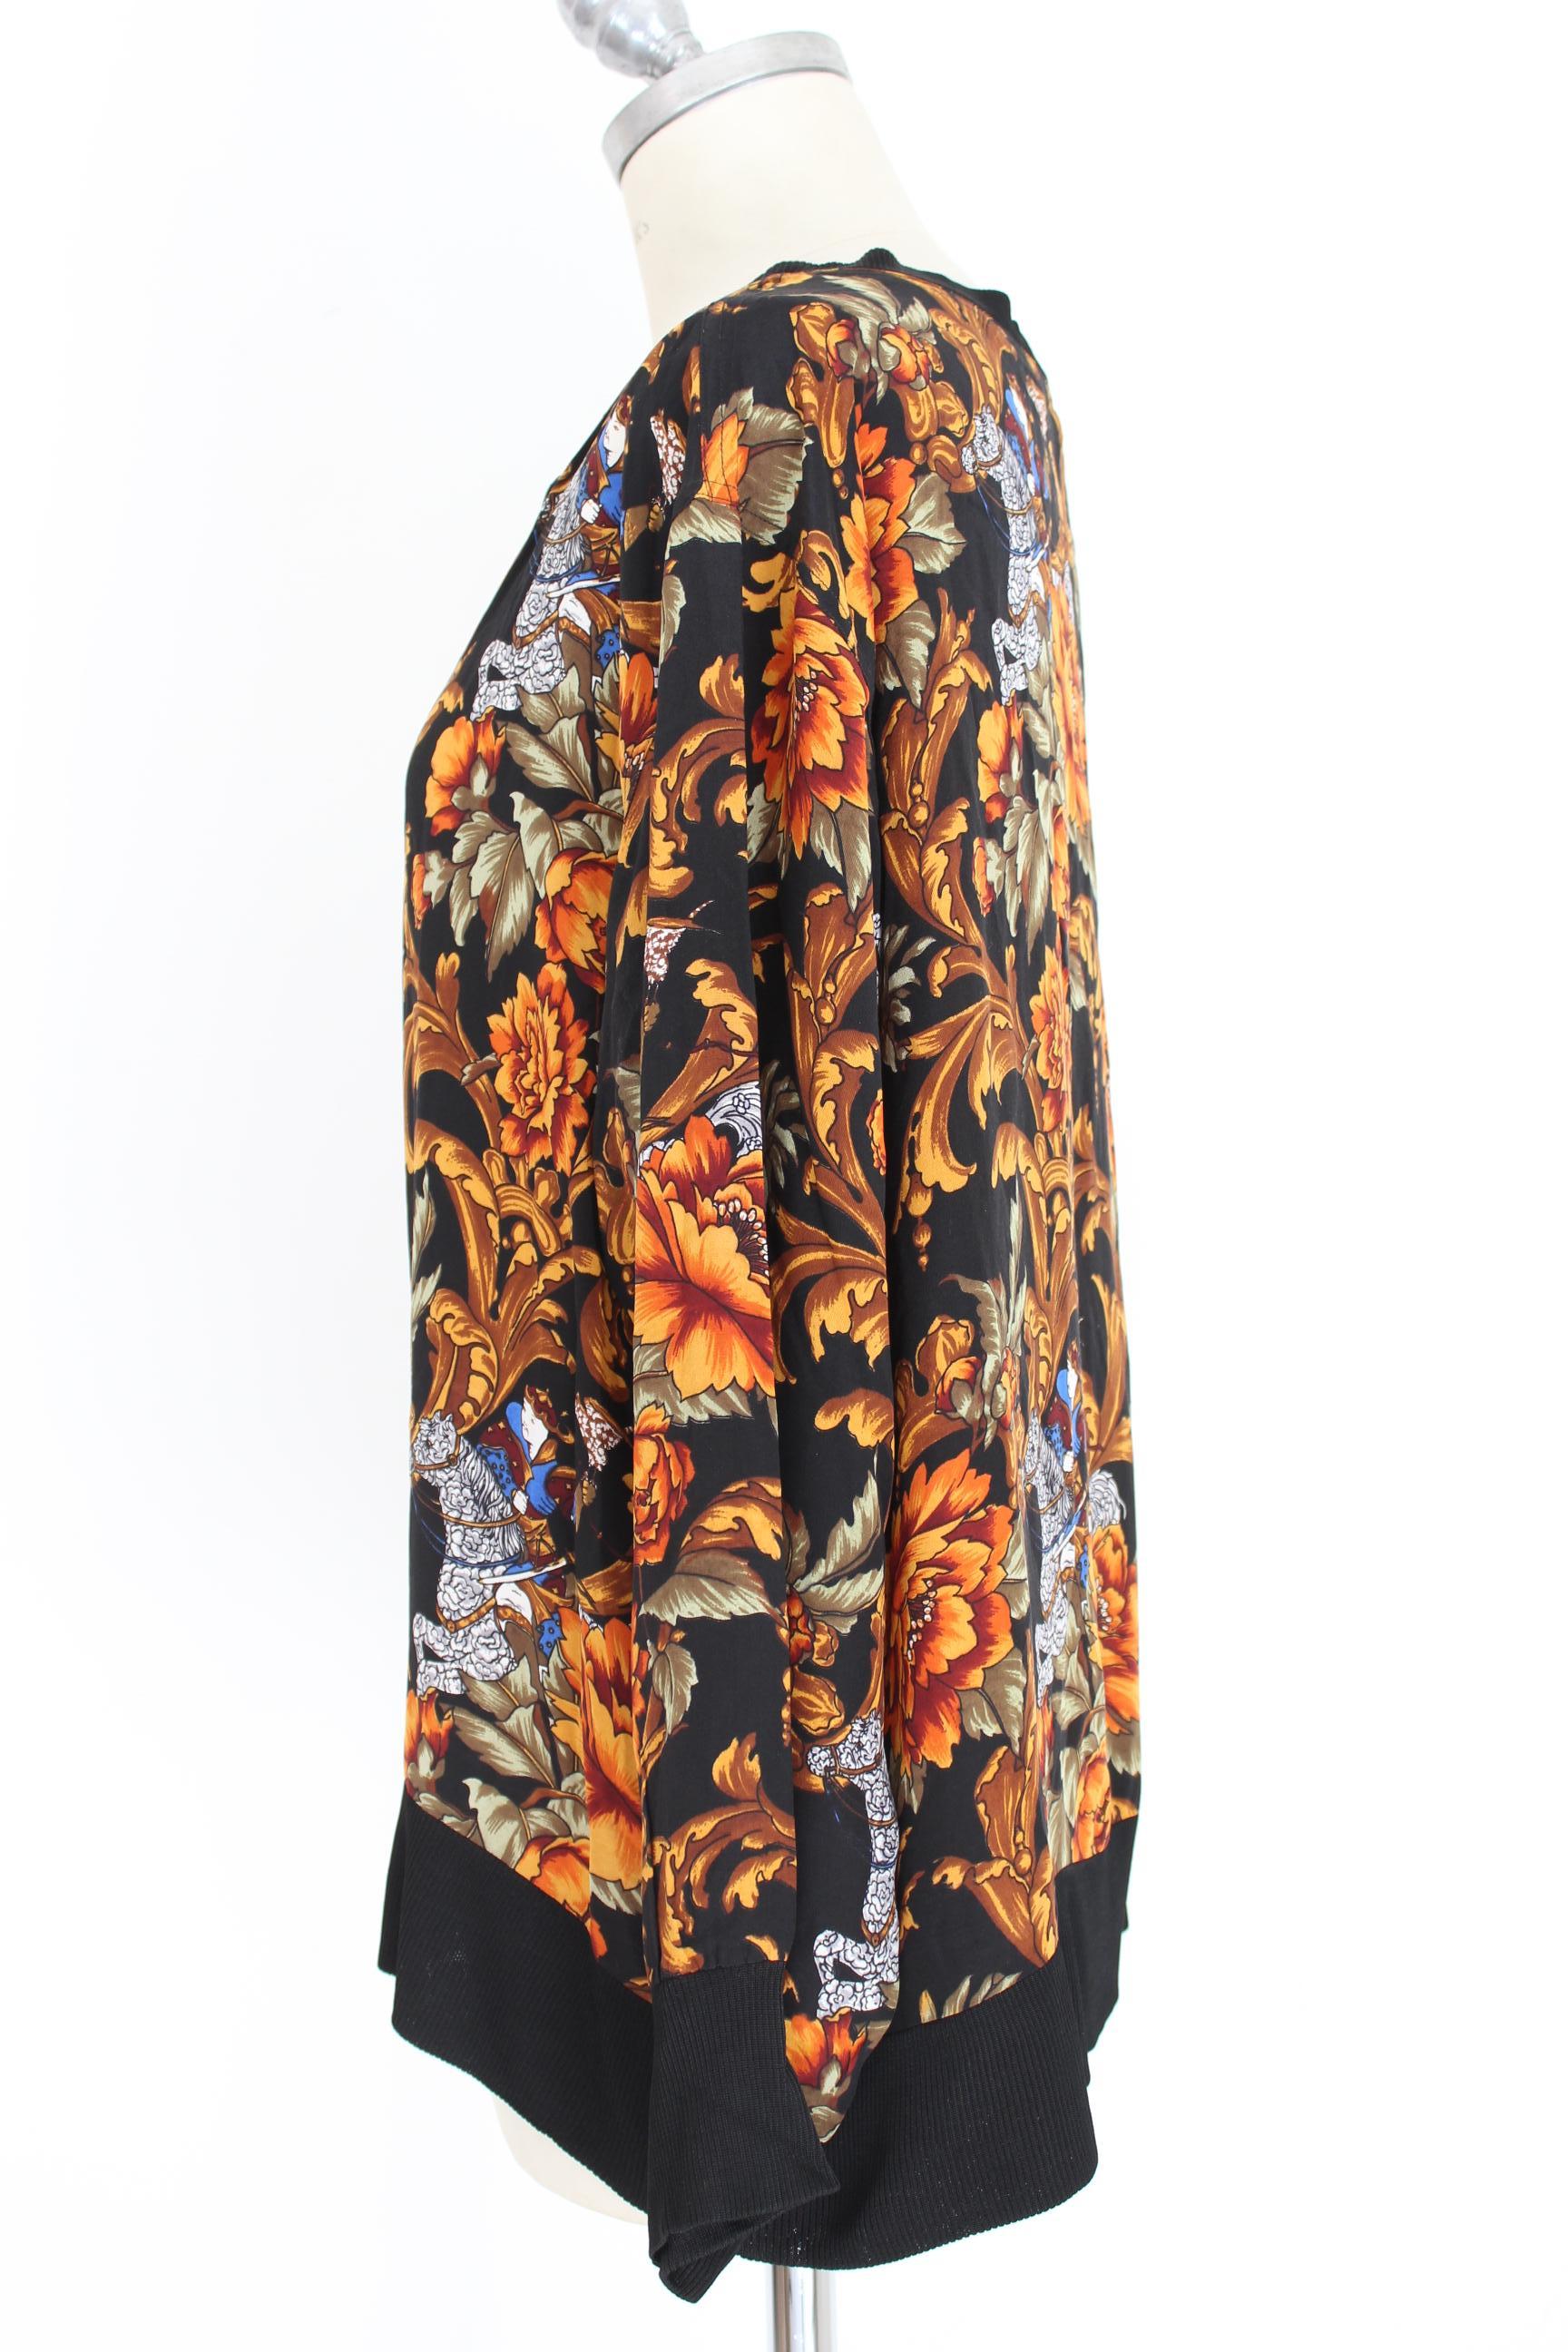 Salvatore Ferragamo Black Orange Silk Floral Shirt 1990s In Excellent Condition In Brindisi, Bt